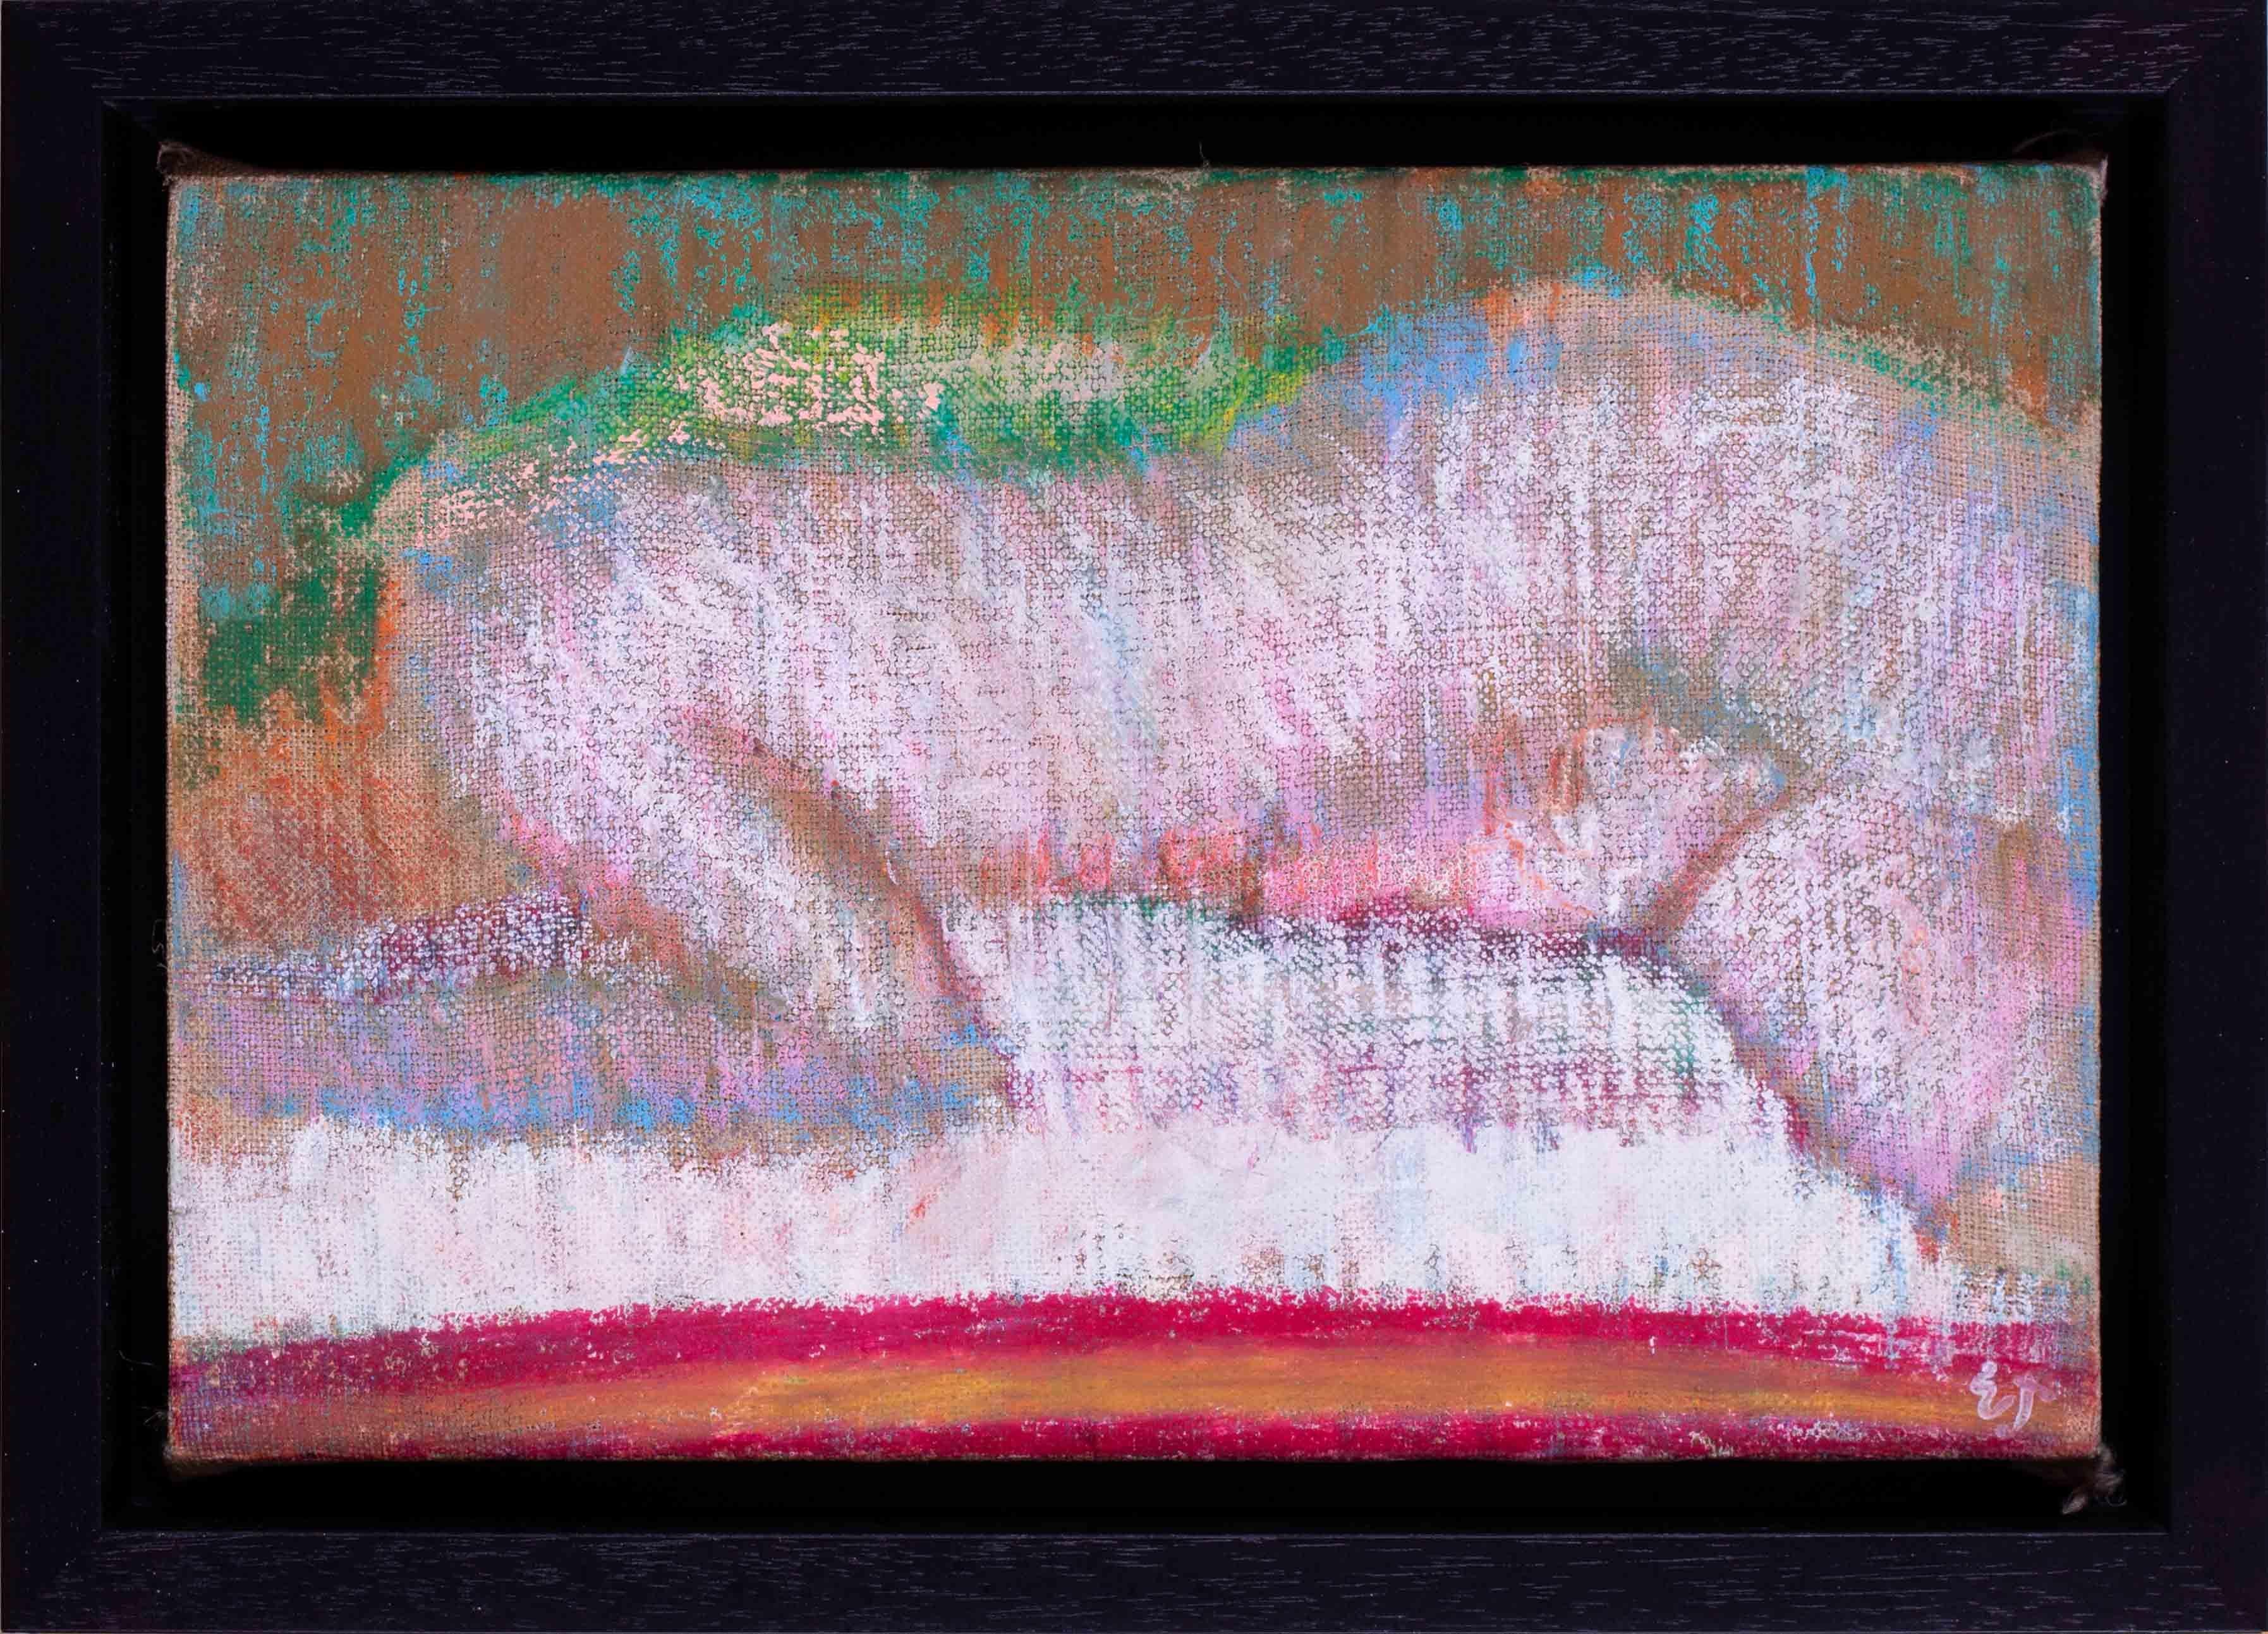 Eine wunderschön ausgeführte Ölpastellzeichnung eines auf einem Bett liegenden Aktes des modernen britischen Künstlers Ewart Johns (1923 - 2013), 1980

Ewart Johns (Brite, 1923 - 2013)
Nackt auf dem Bett
Ölpastell auf Leinwand, aufgelegt auf